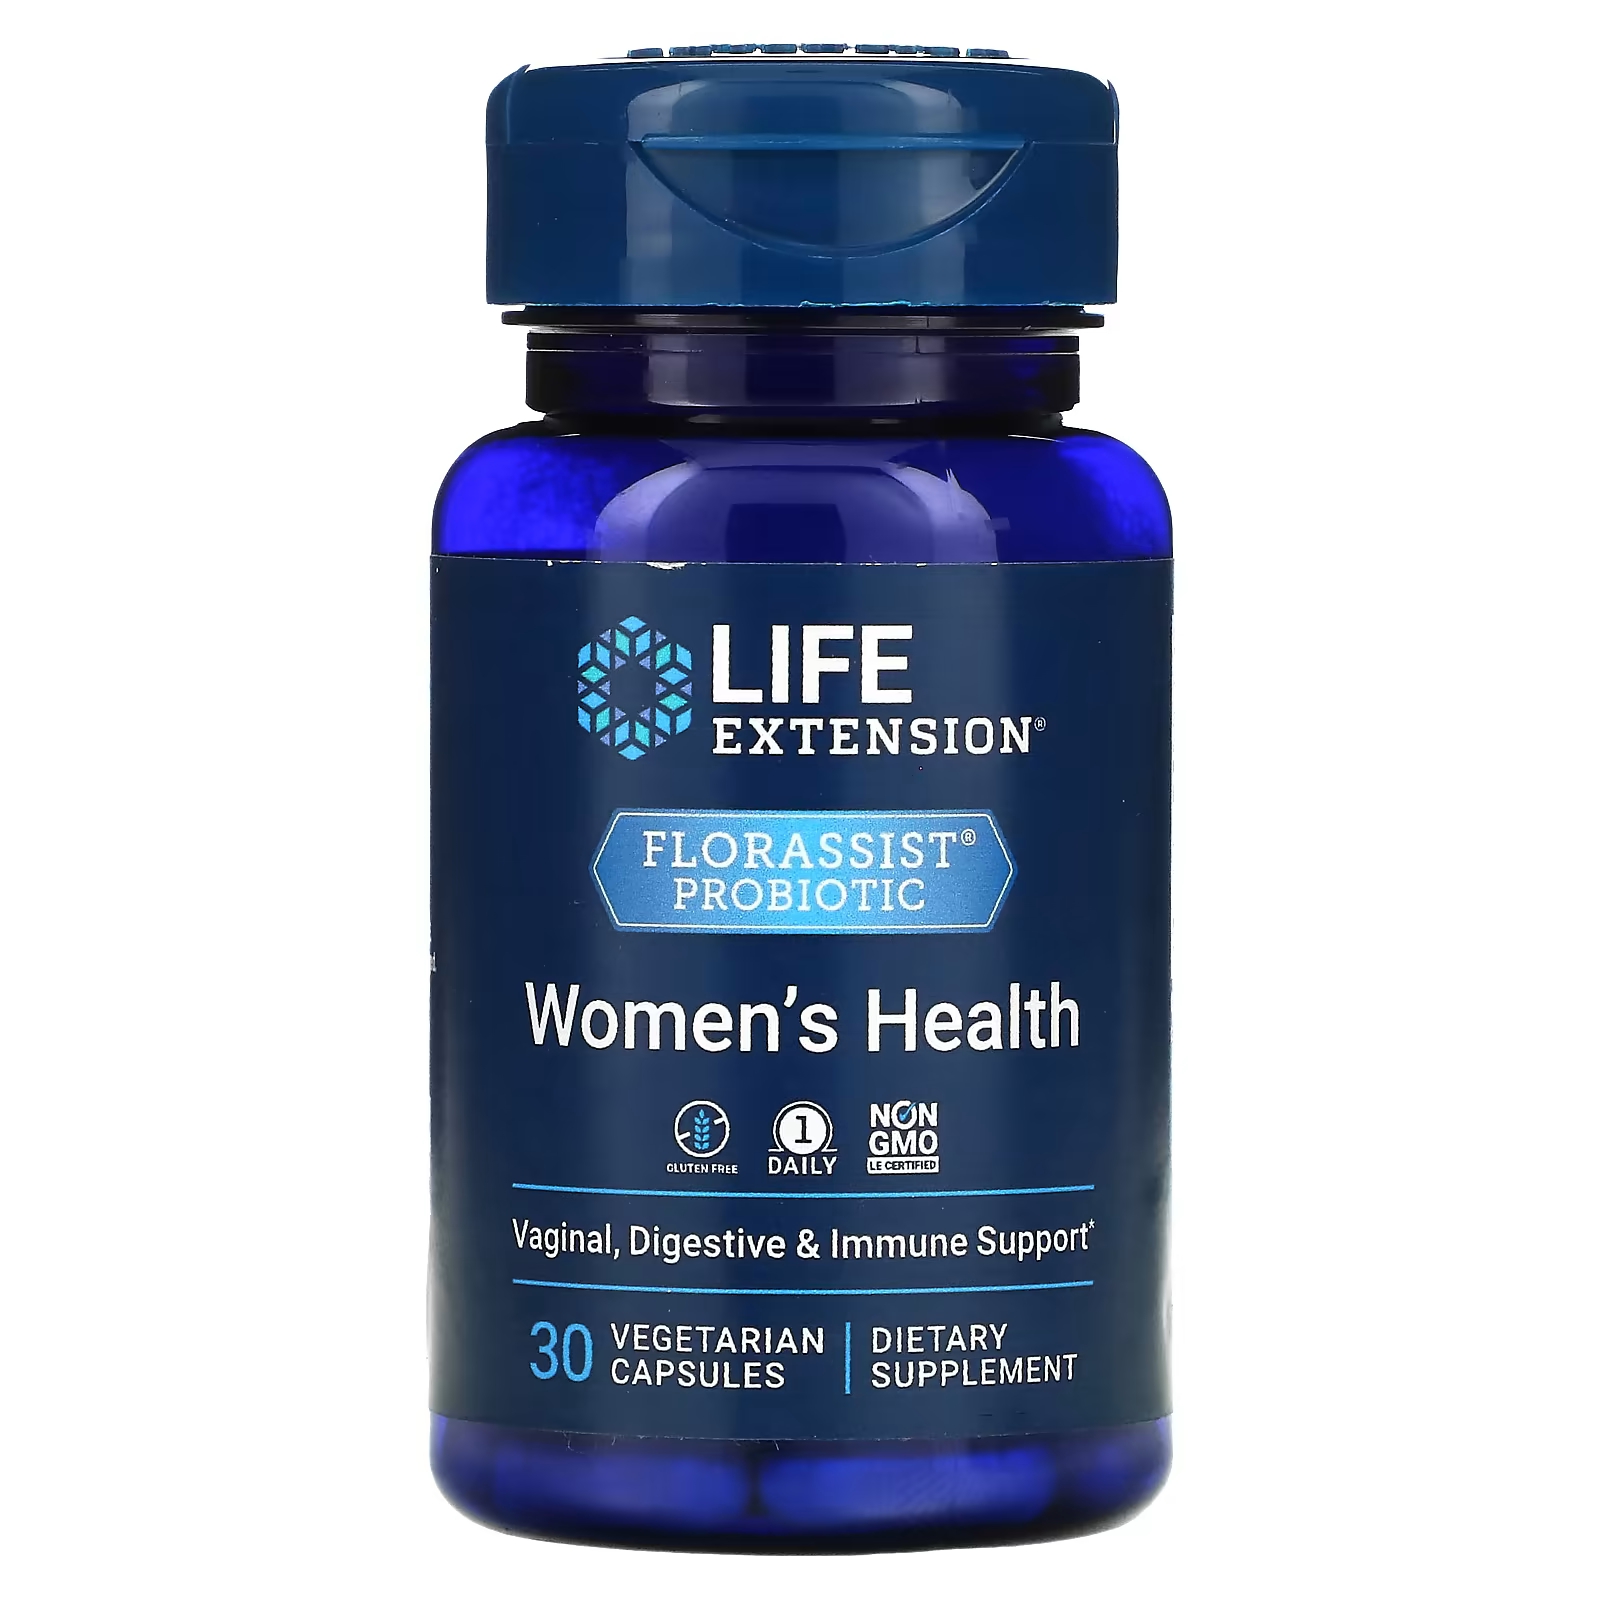 Пробиотик Life Extension Florassist для женского здоровья, 30 капсул health labs care 4her пробиотик дневной ночной пробиотик в двухкомпонентной формуле пищевая добавка 60 капсул